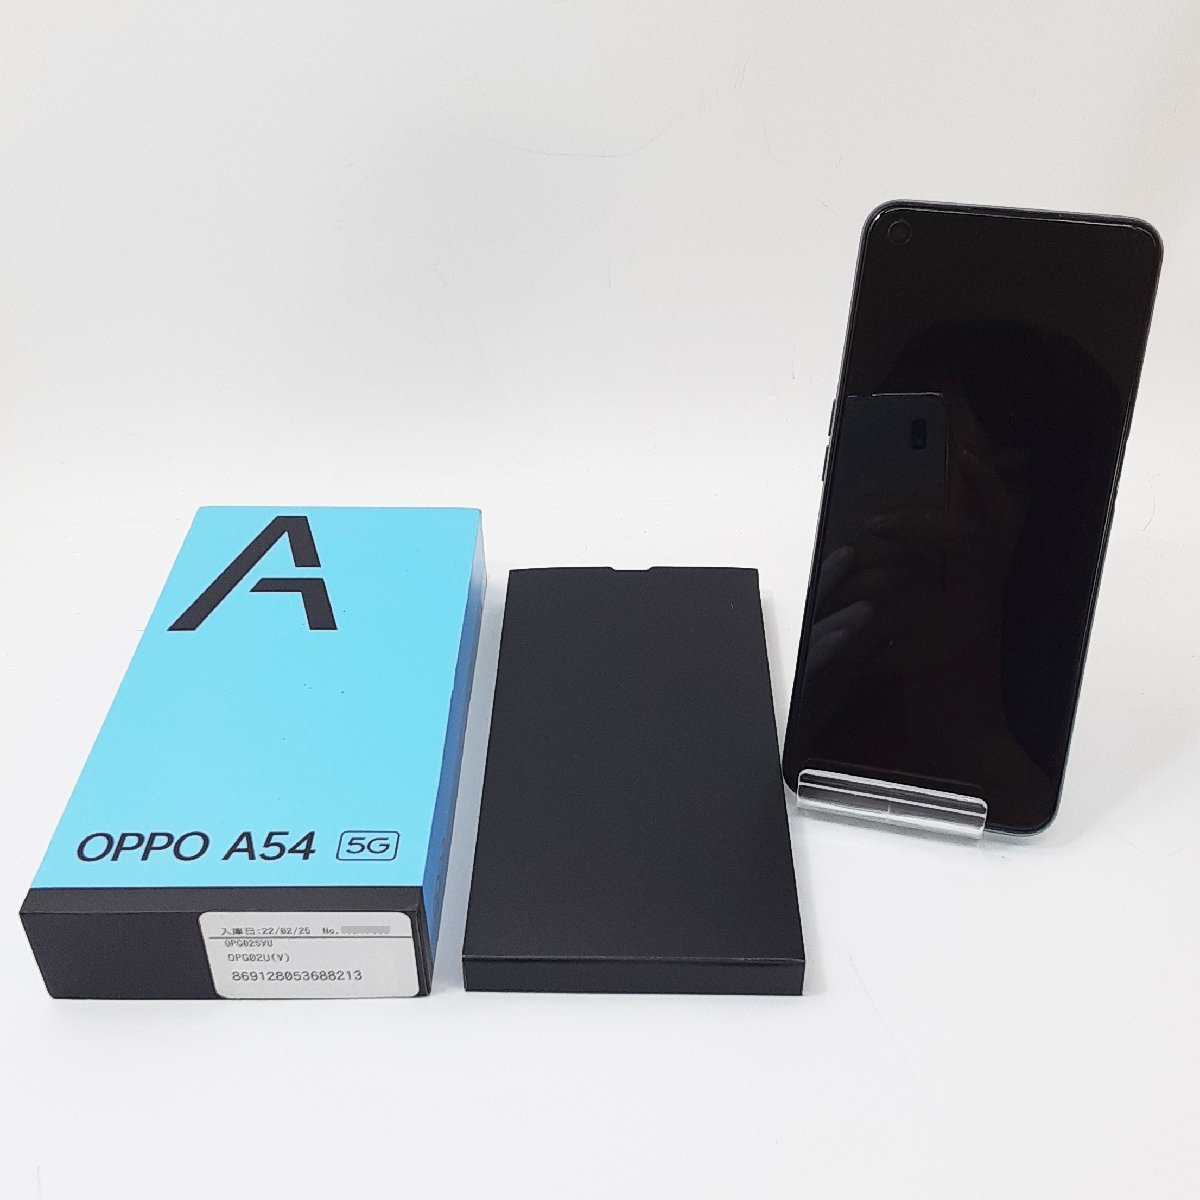 最高 OPPO A54 android 利用制限〇 未使用 スマホ本体